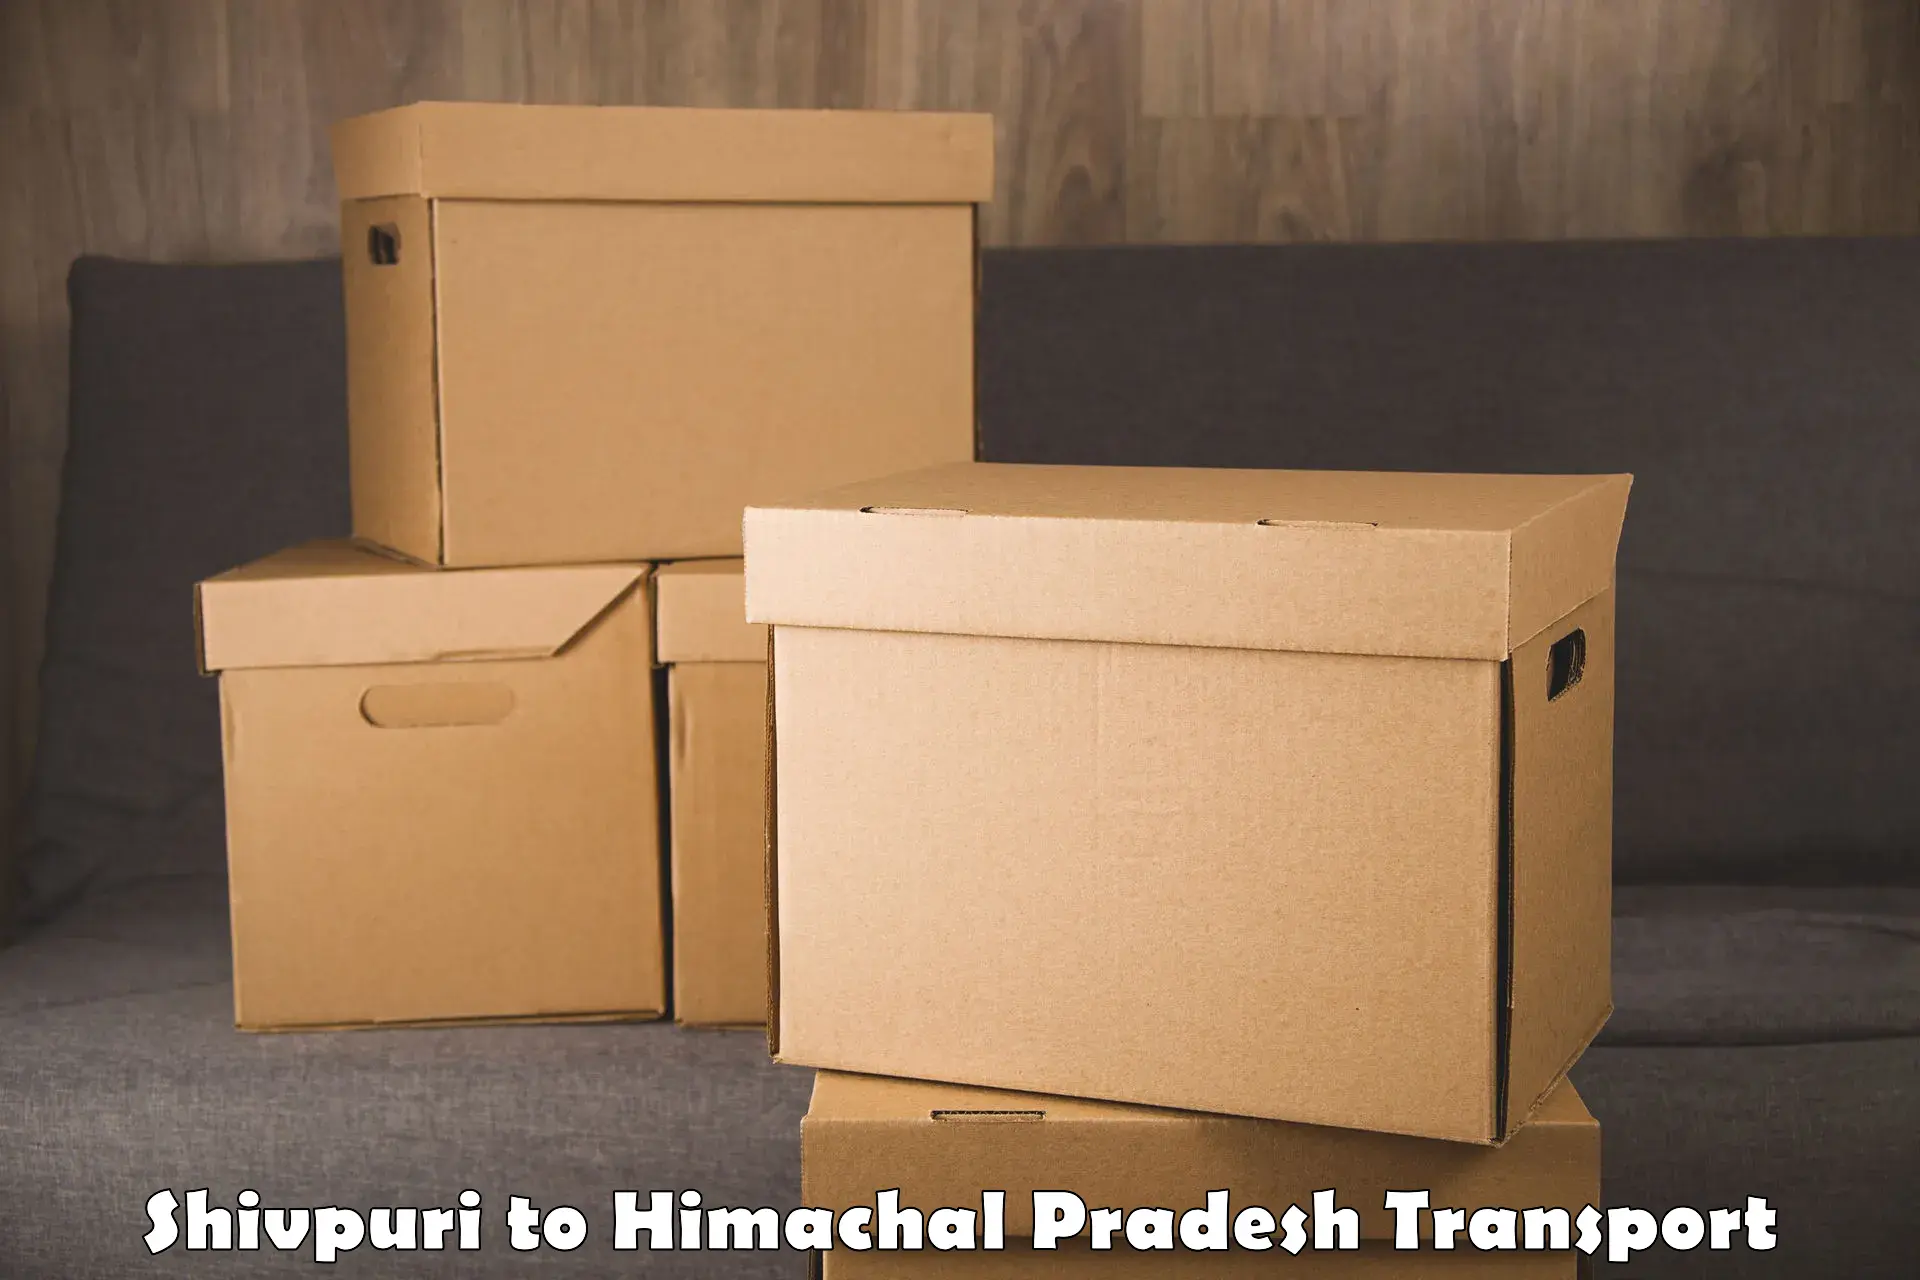 Nearby transport service Shivpuri to Himachal Pradesh